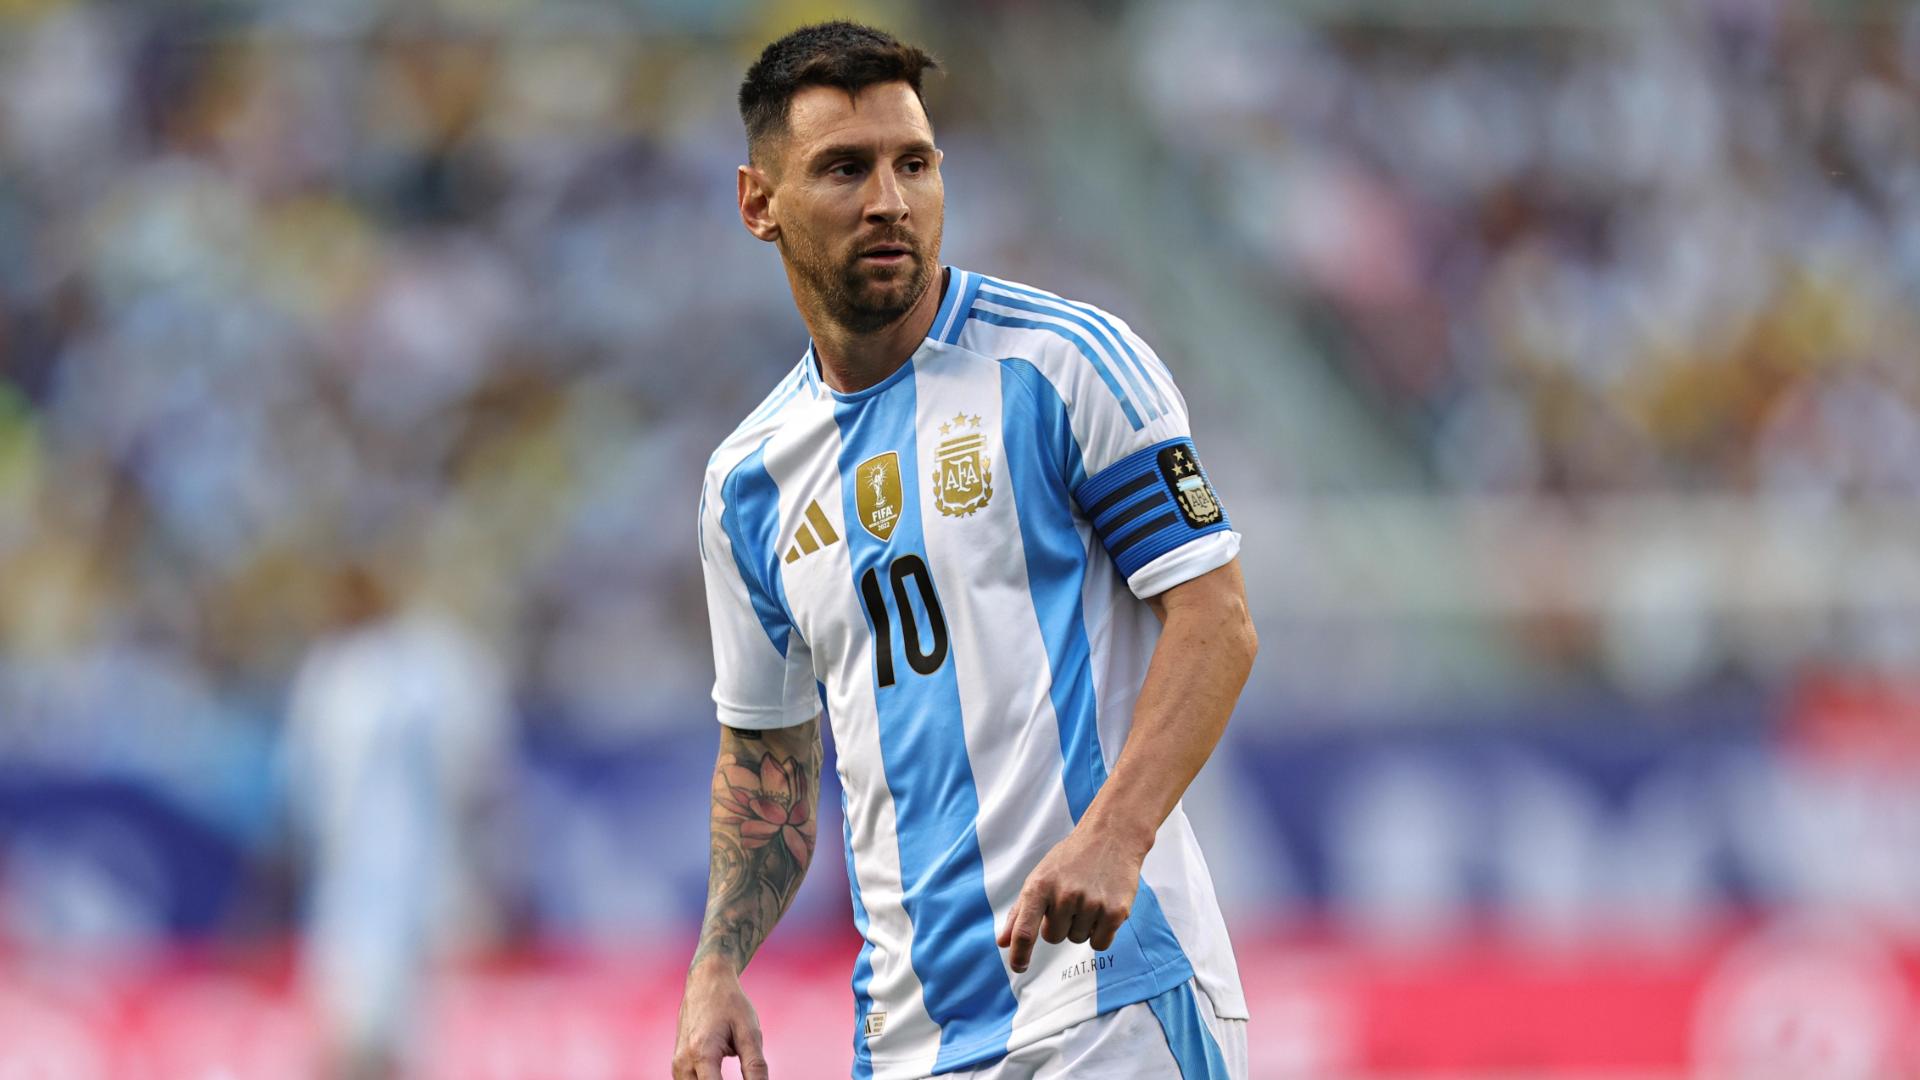 Cile-Argentina Streaming Gratis, il pronostico della Copa America: GOL o NO GOL?